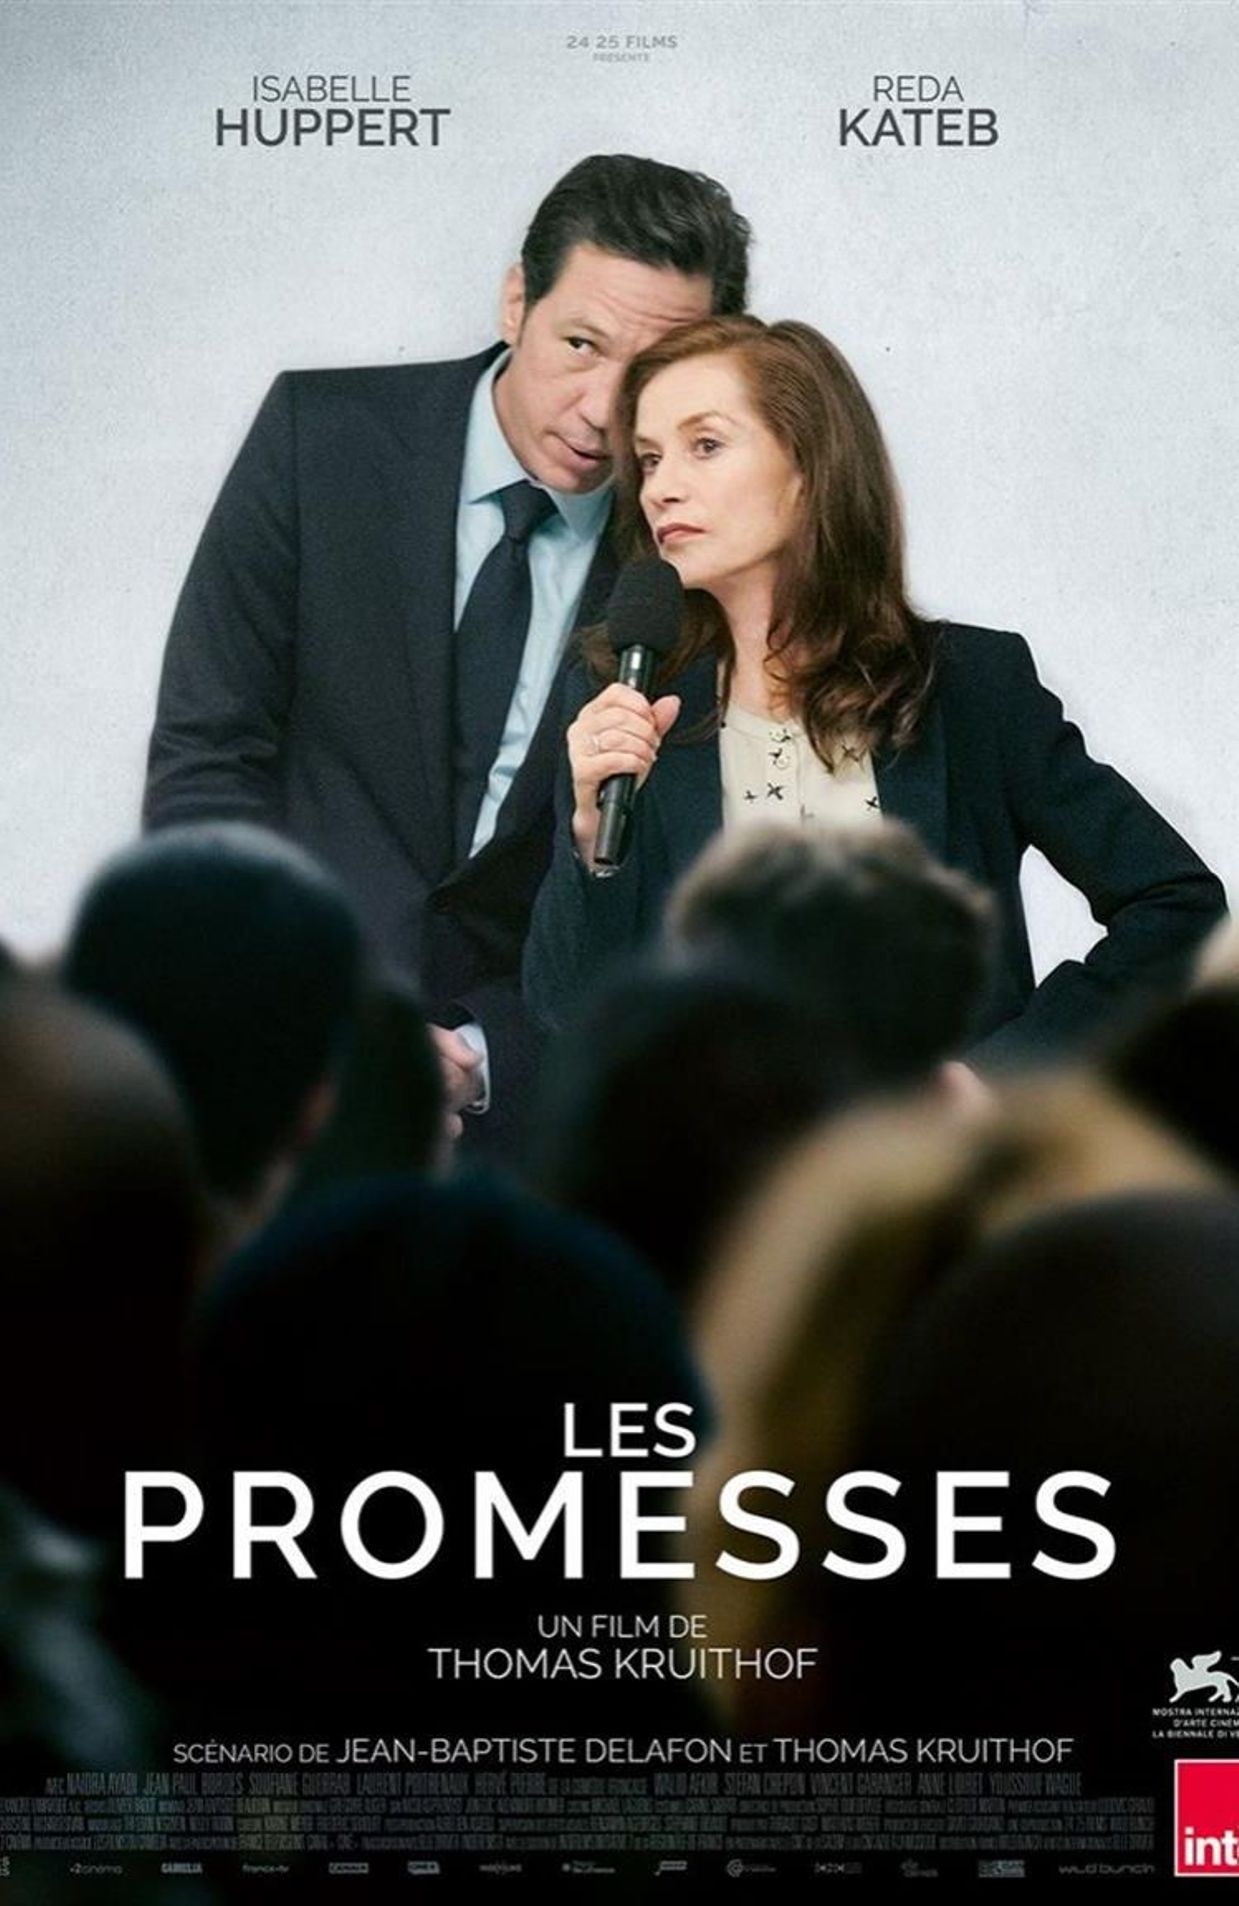 L'affiche du film "Les promesses"